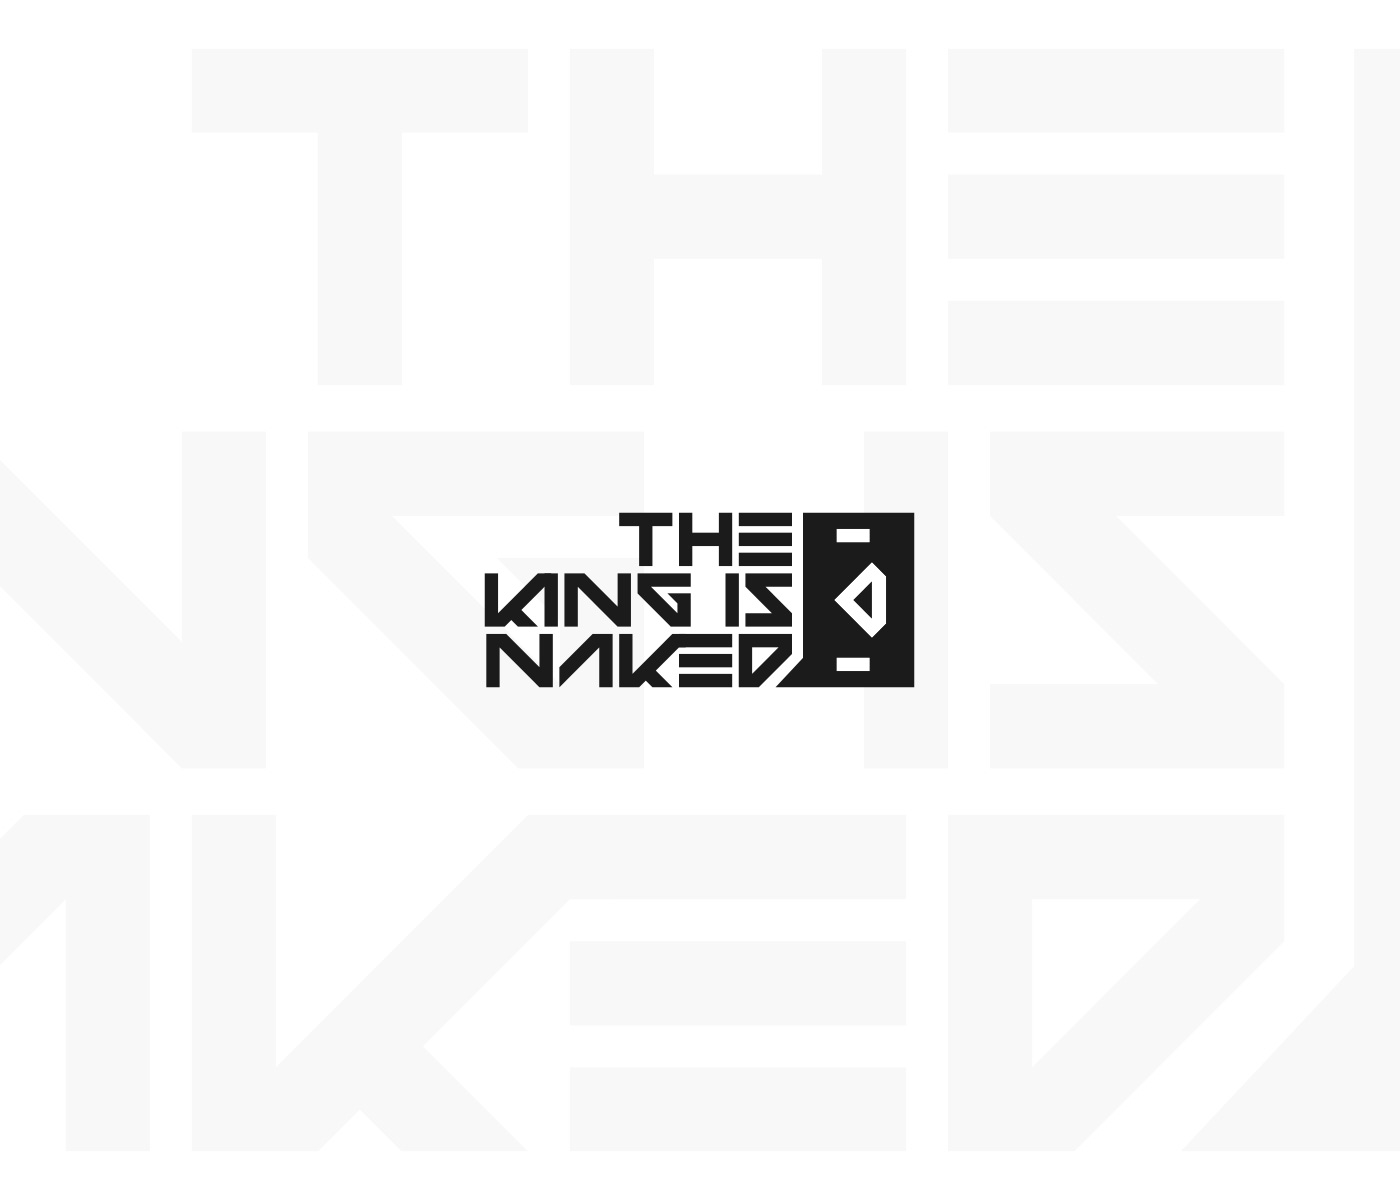 Logo marki odzieżowej The King Is Naked